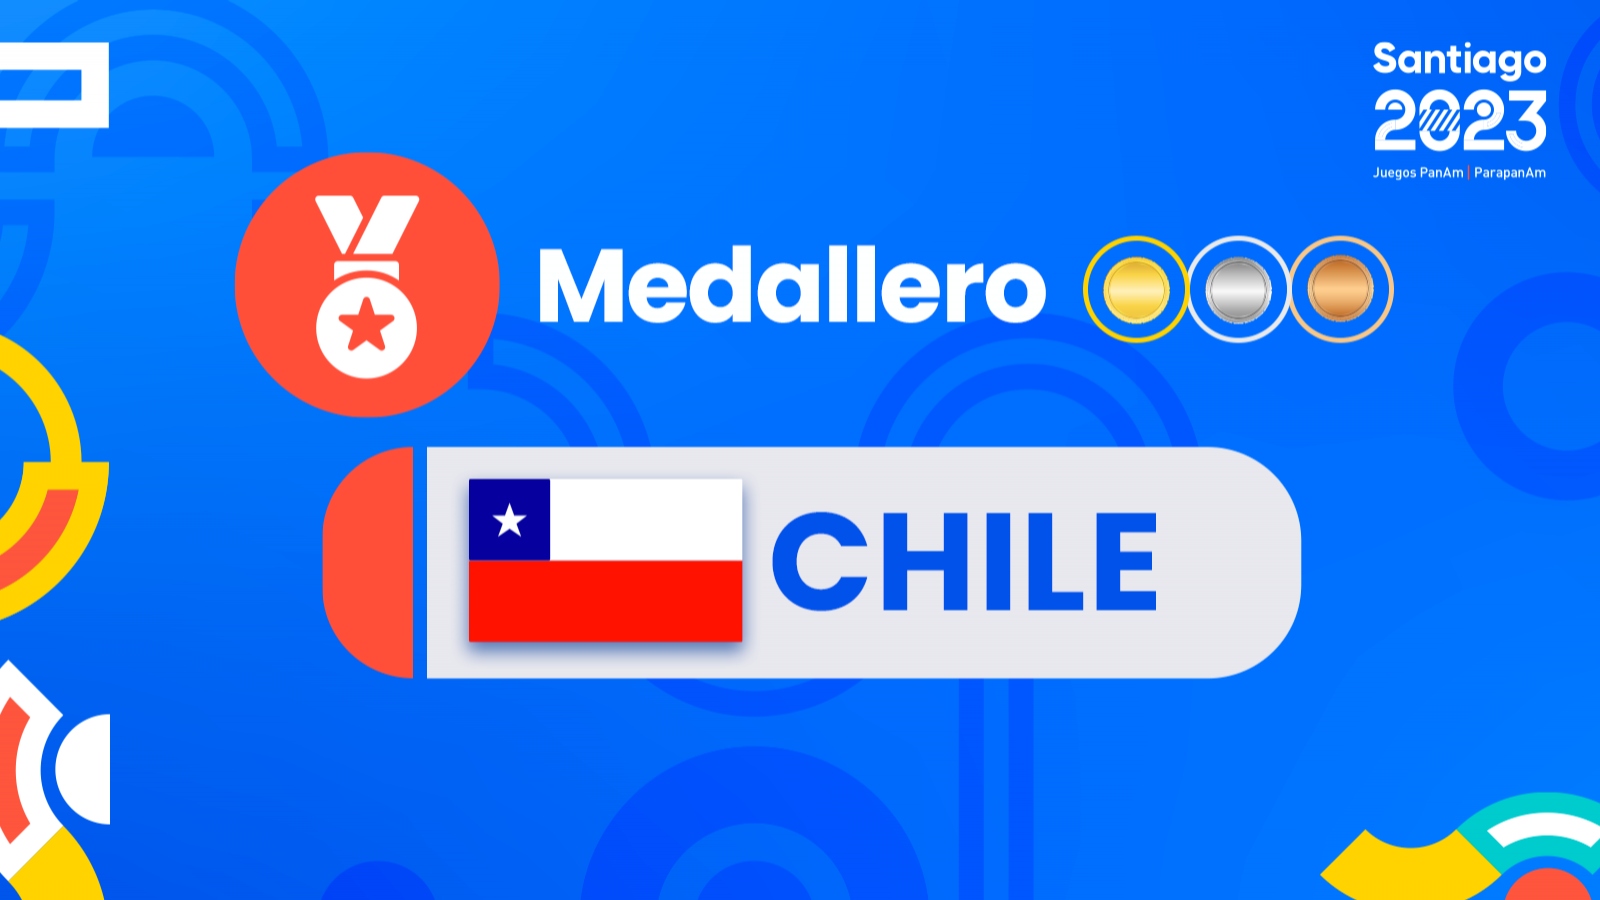 Medallero de Chile Parapanamericanos Santiago 2023